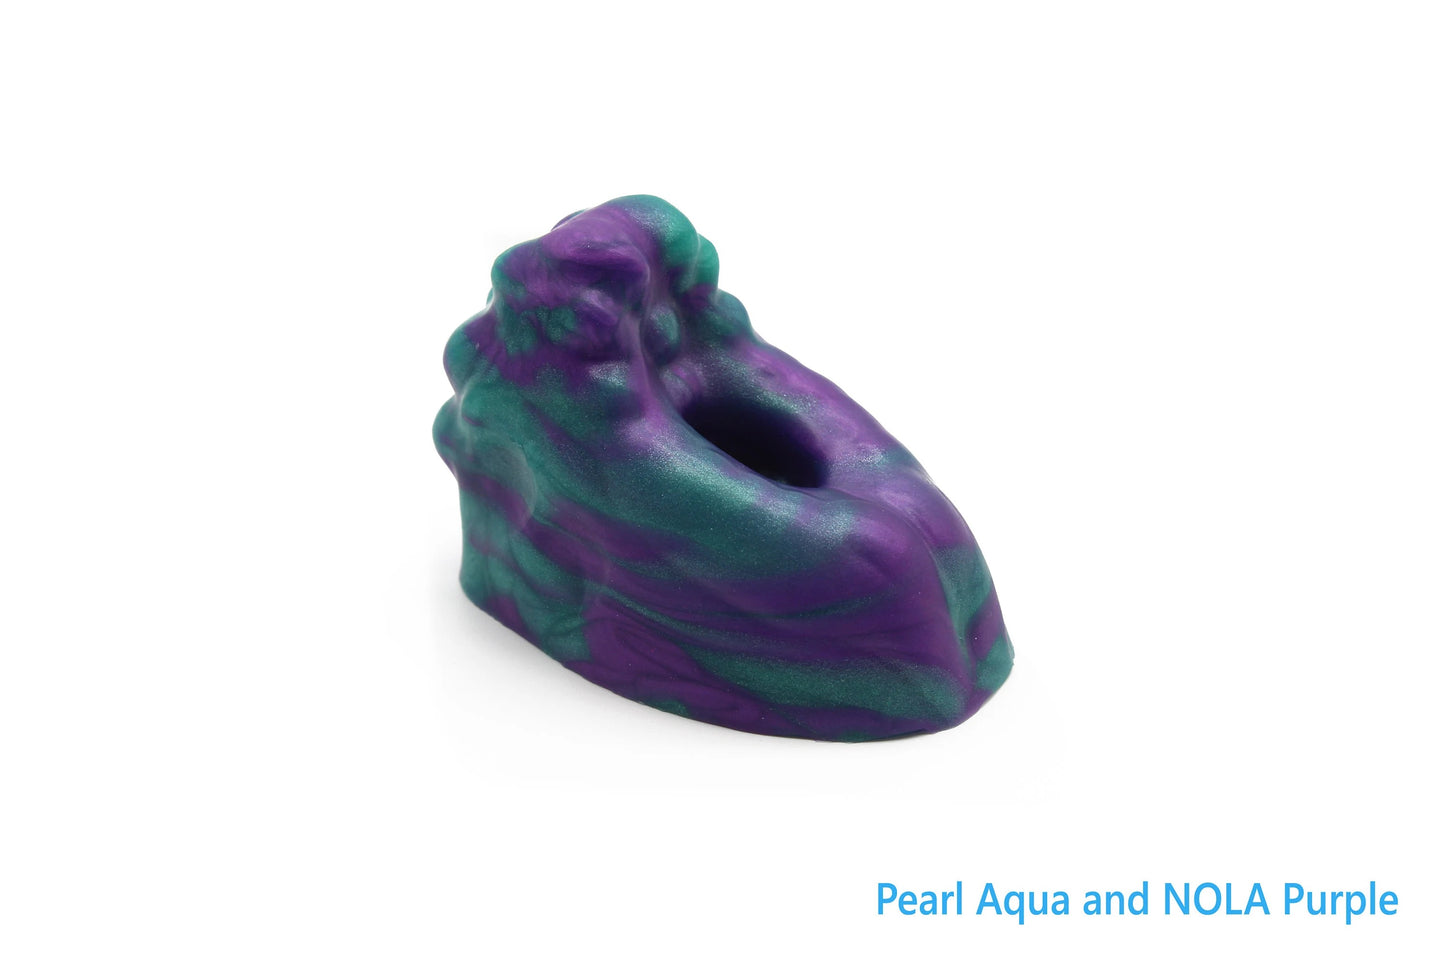 The Pearl Aqua & NOLA Purple Fingo Grinder.